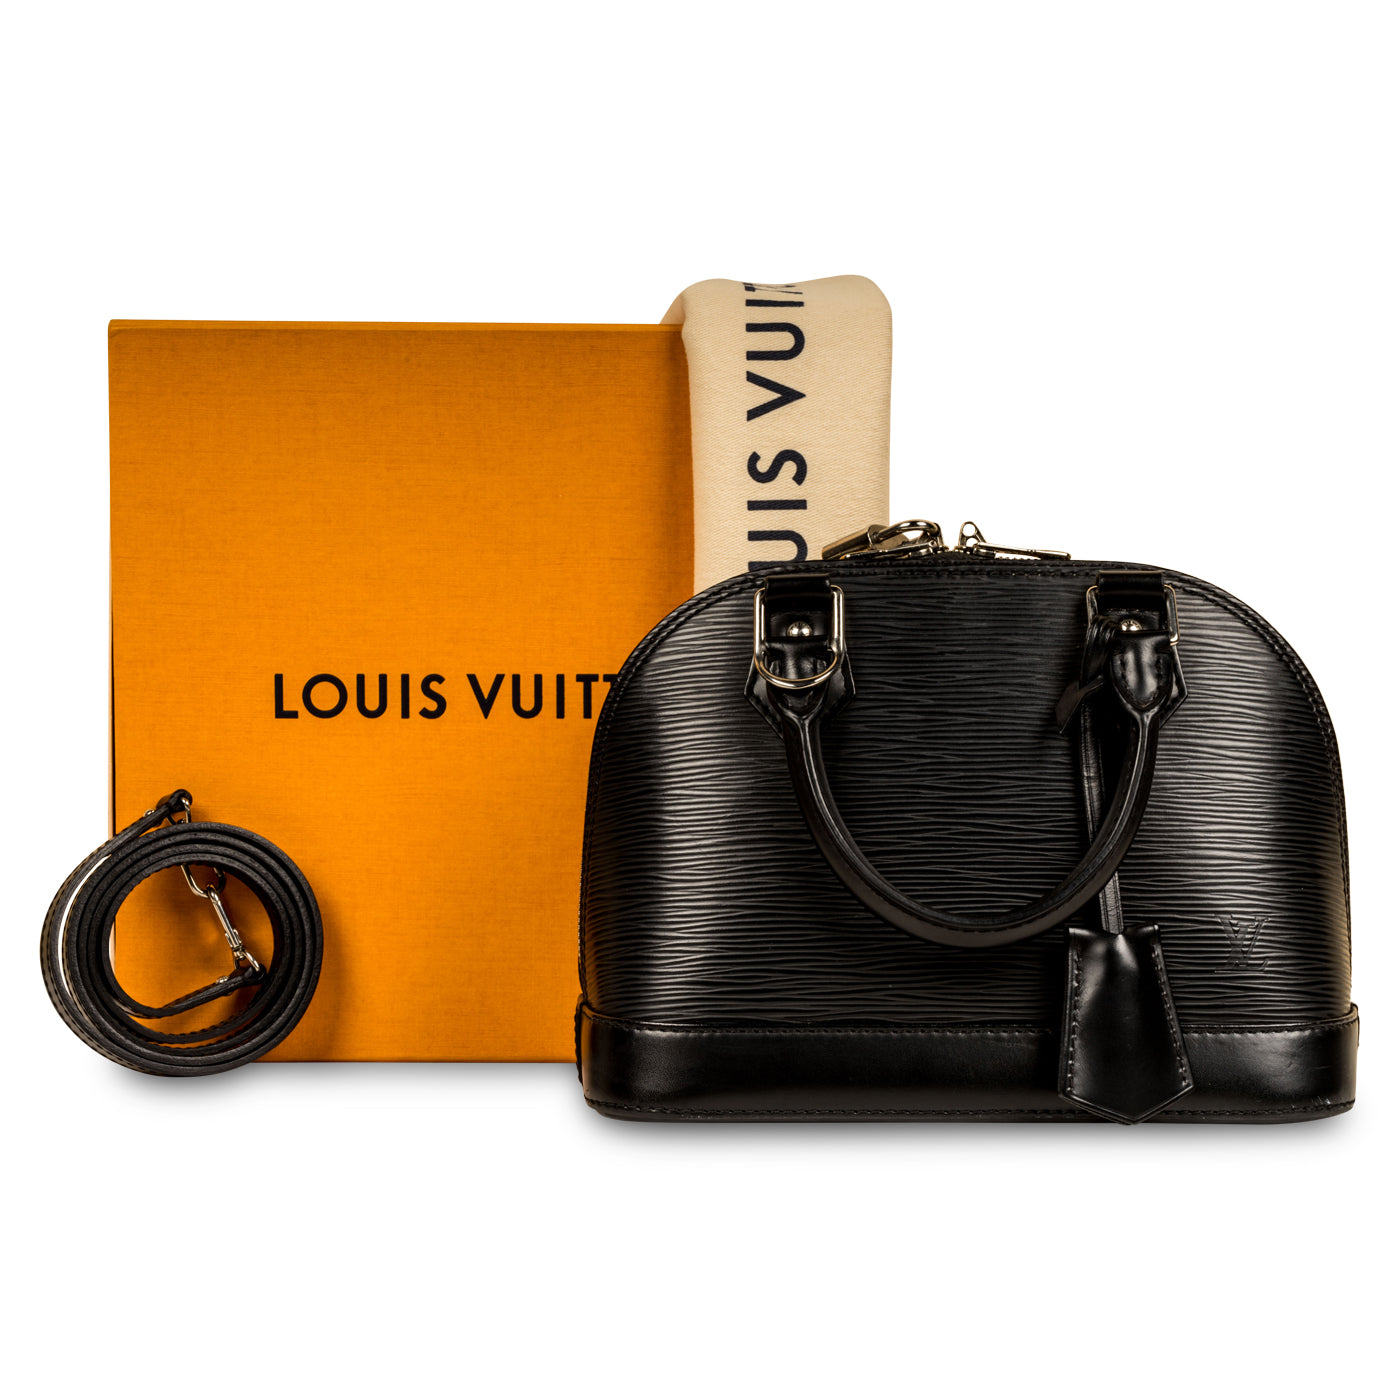 Louis Vuitton Alma Bb Black EPI